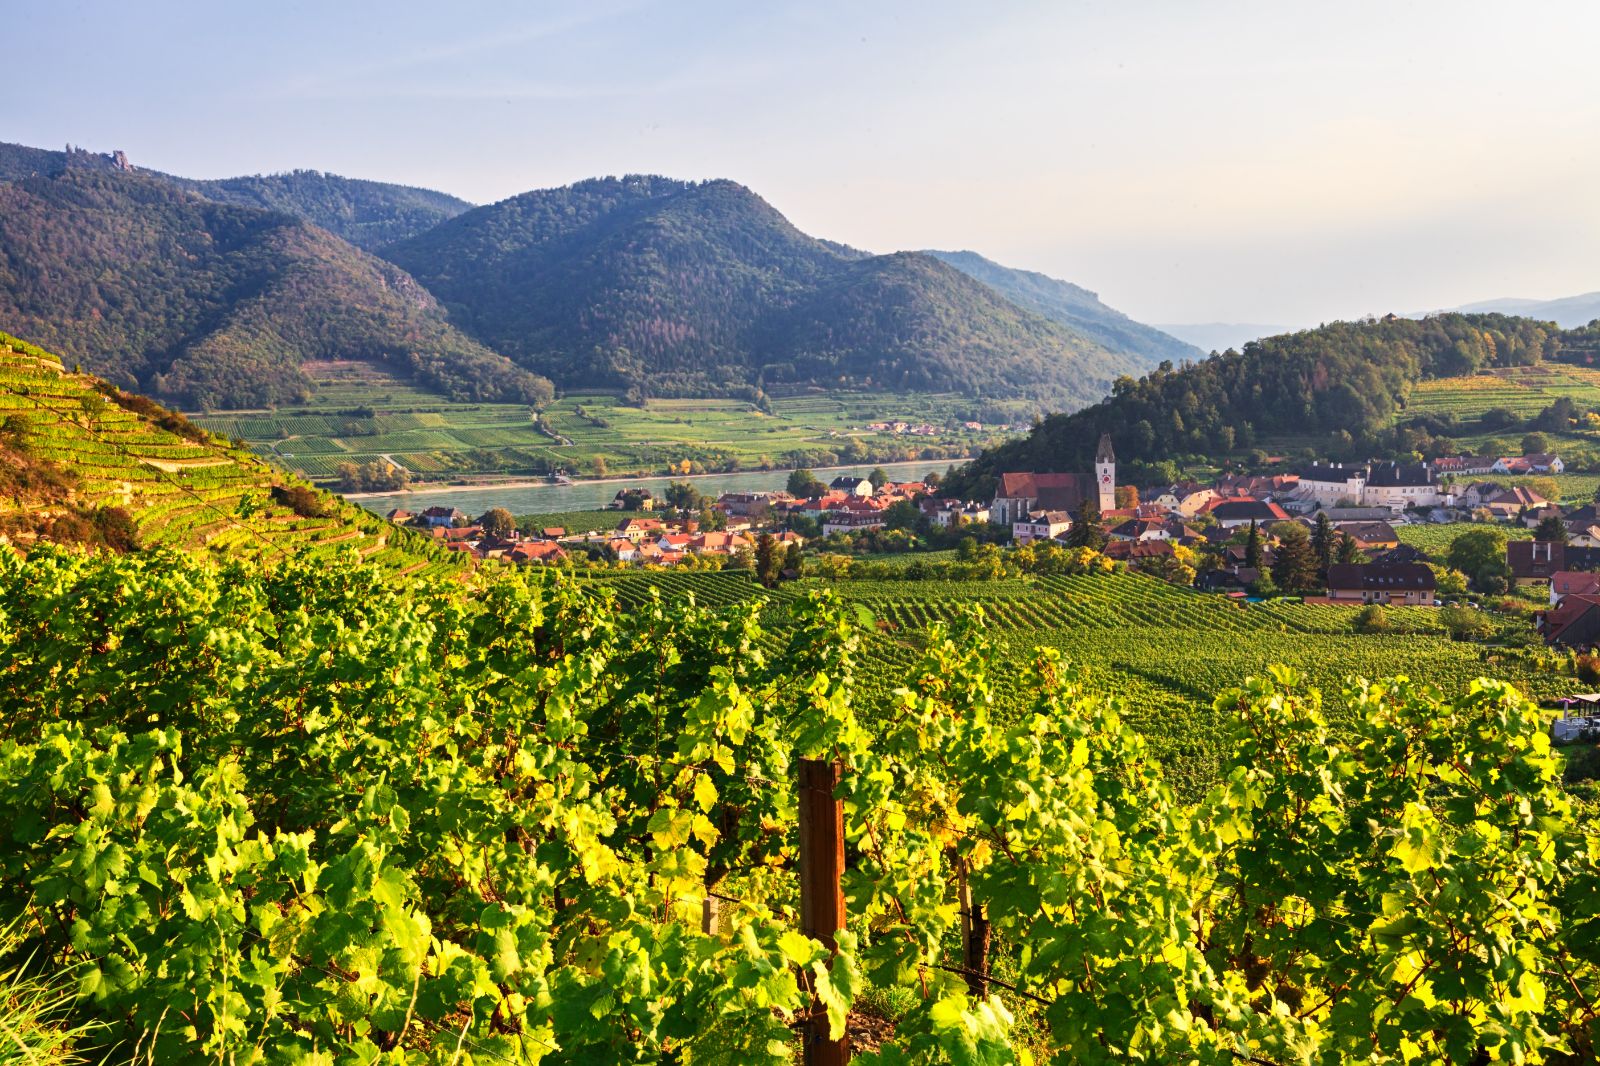 Vineyards in the Wachau Valley in Austria